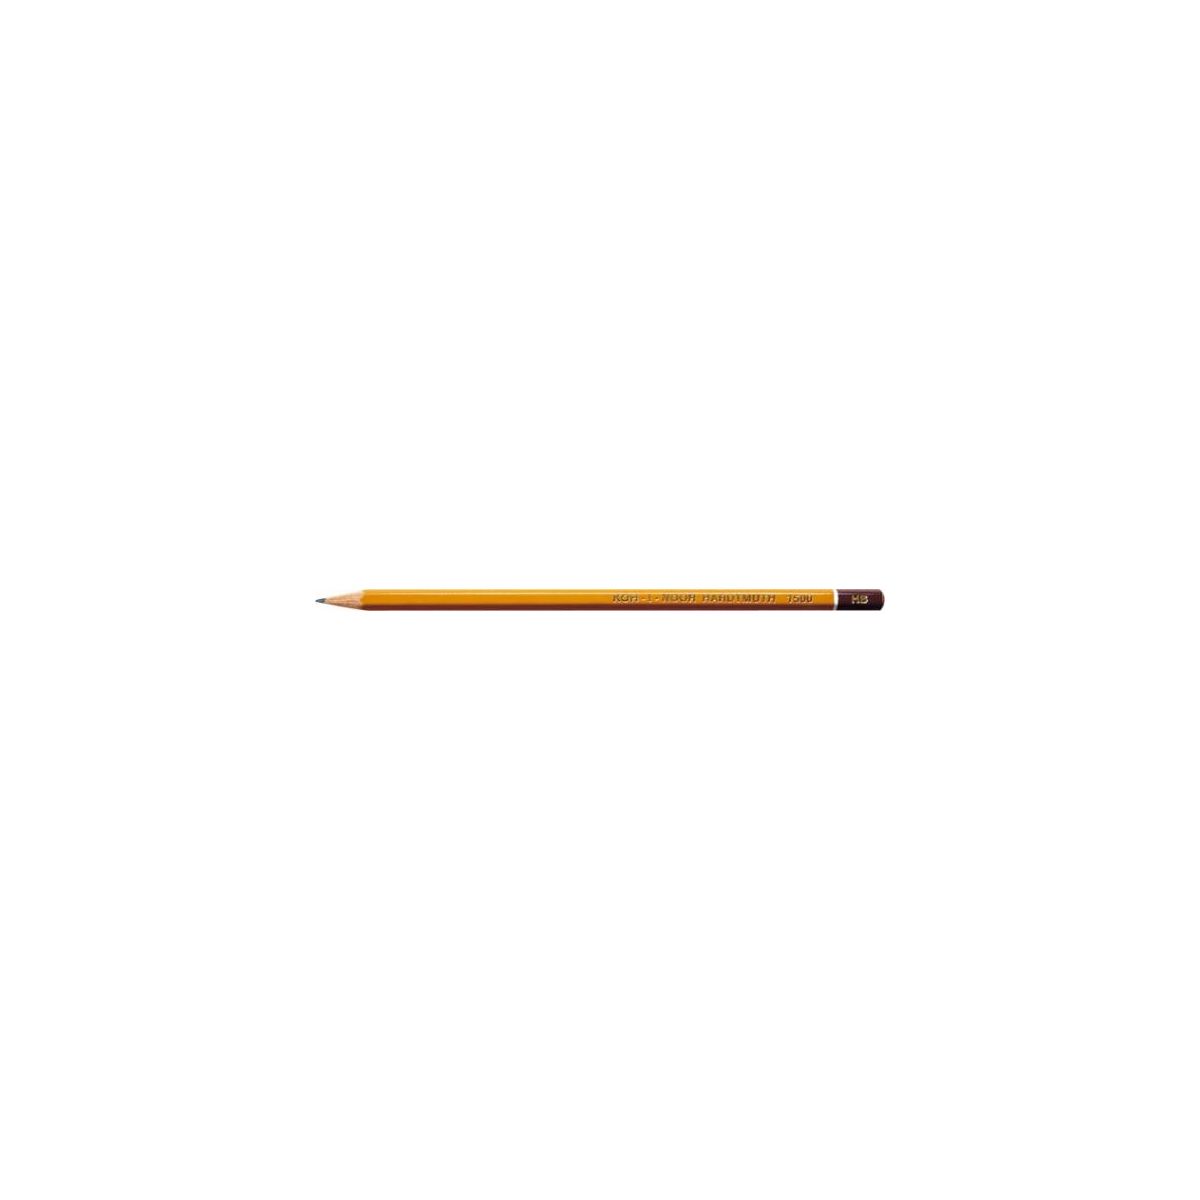 Ołówek Koh-I-Noor 1500 8H